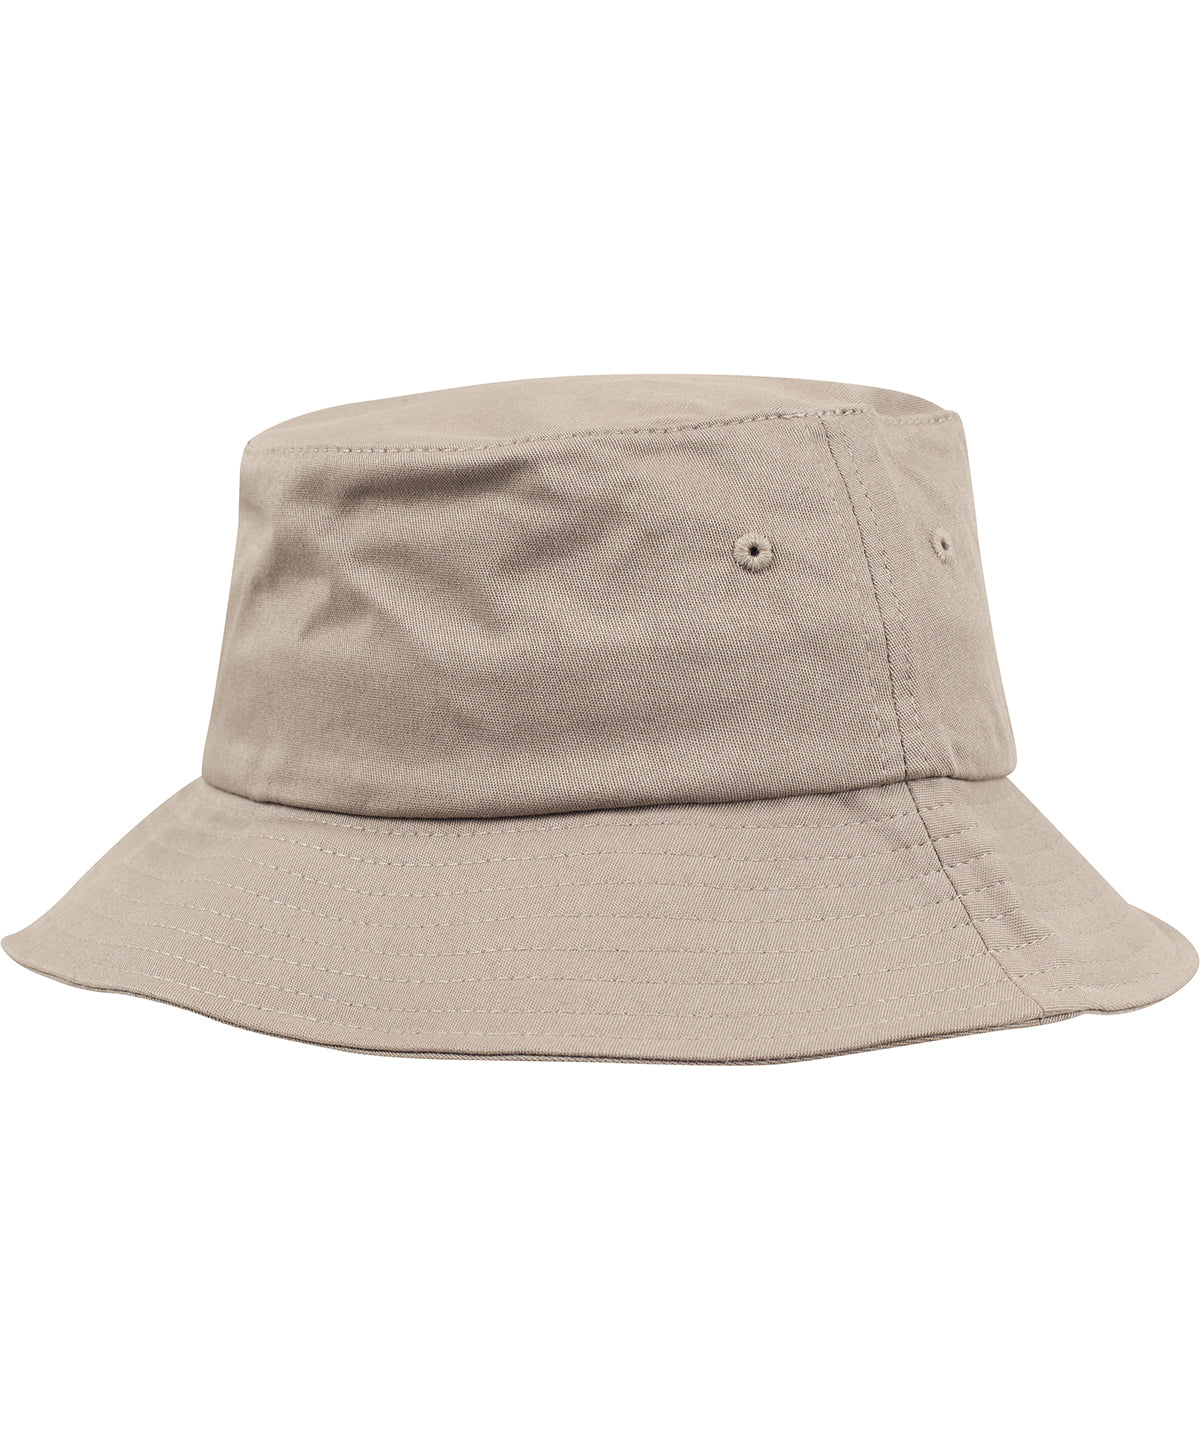 Húfur - Flexfit Cotton Twill Bucket Hat (5003)